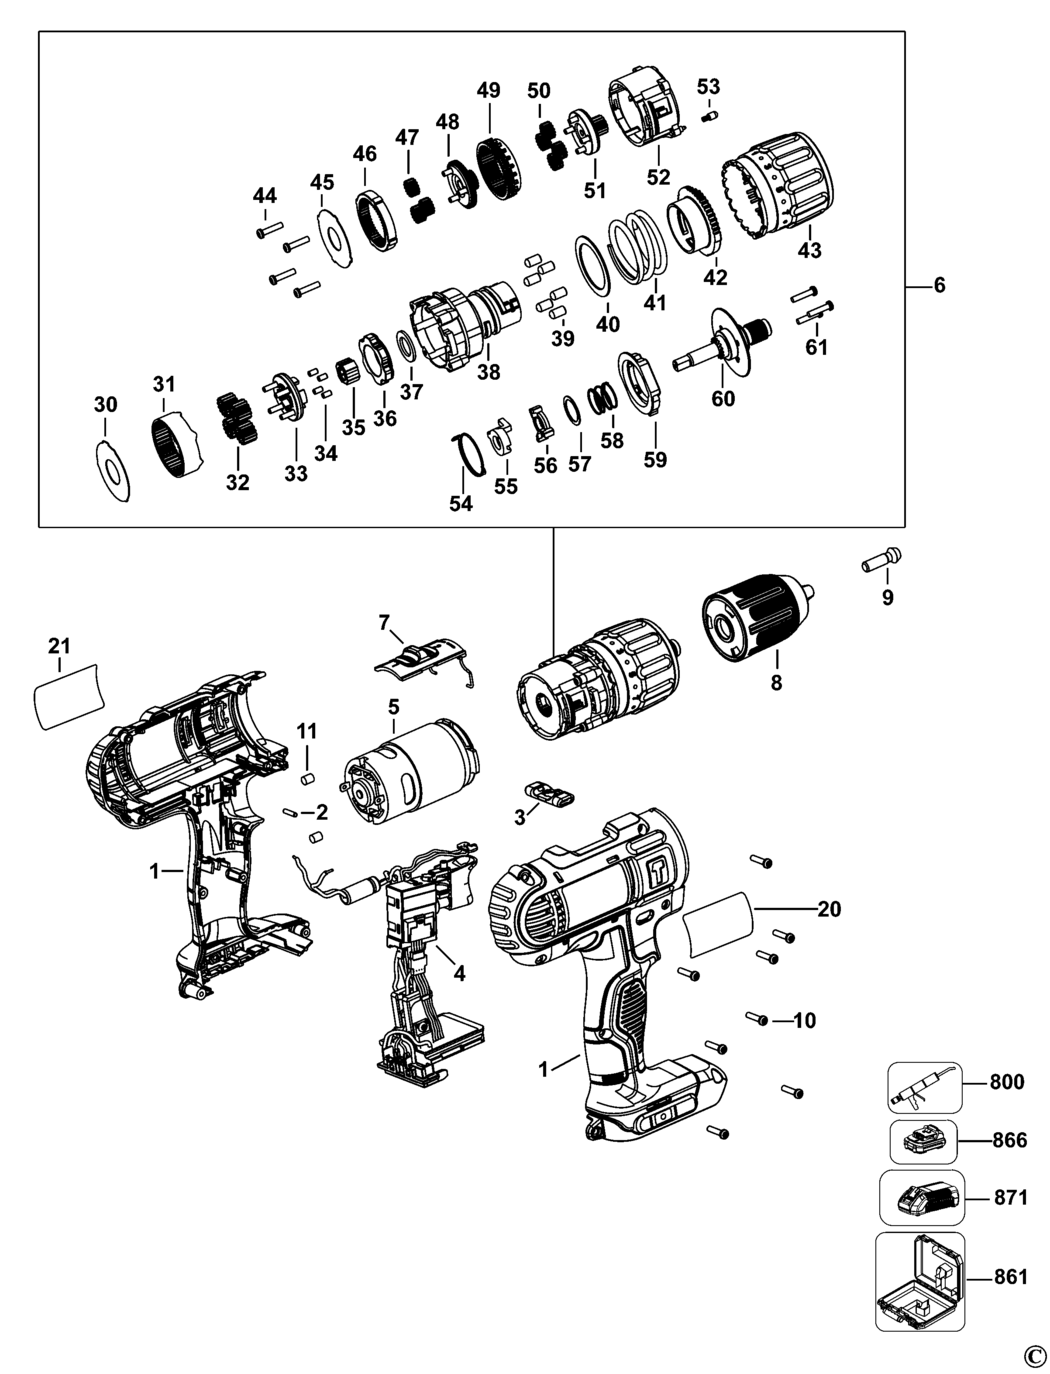 Dewalt DCD776 Type 10 Cordless Drill Spare Parts